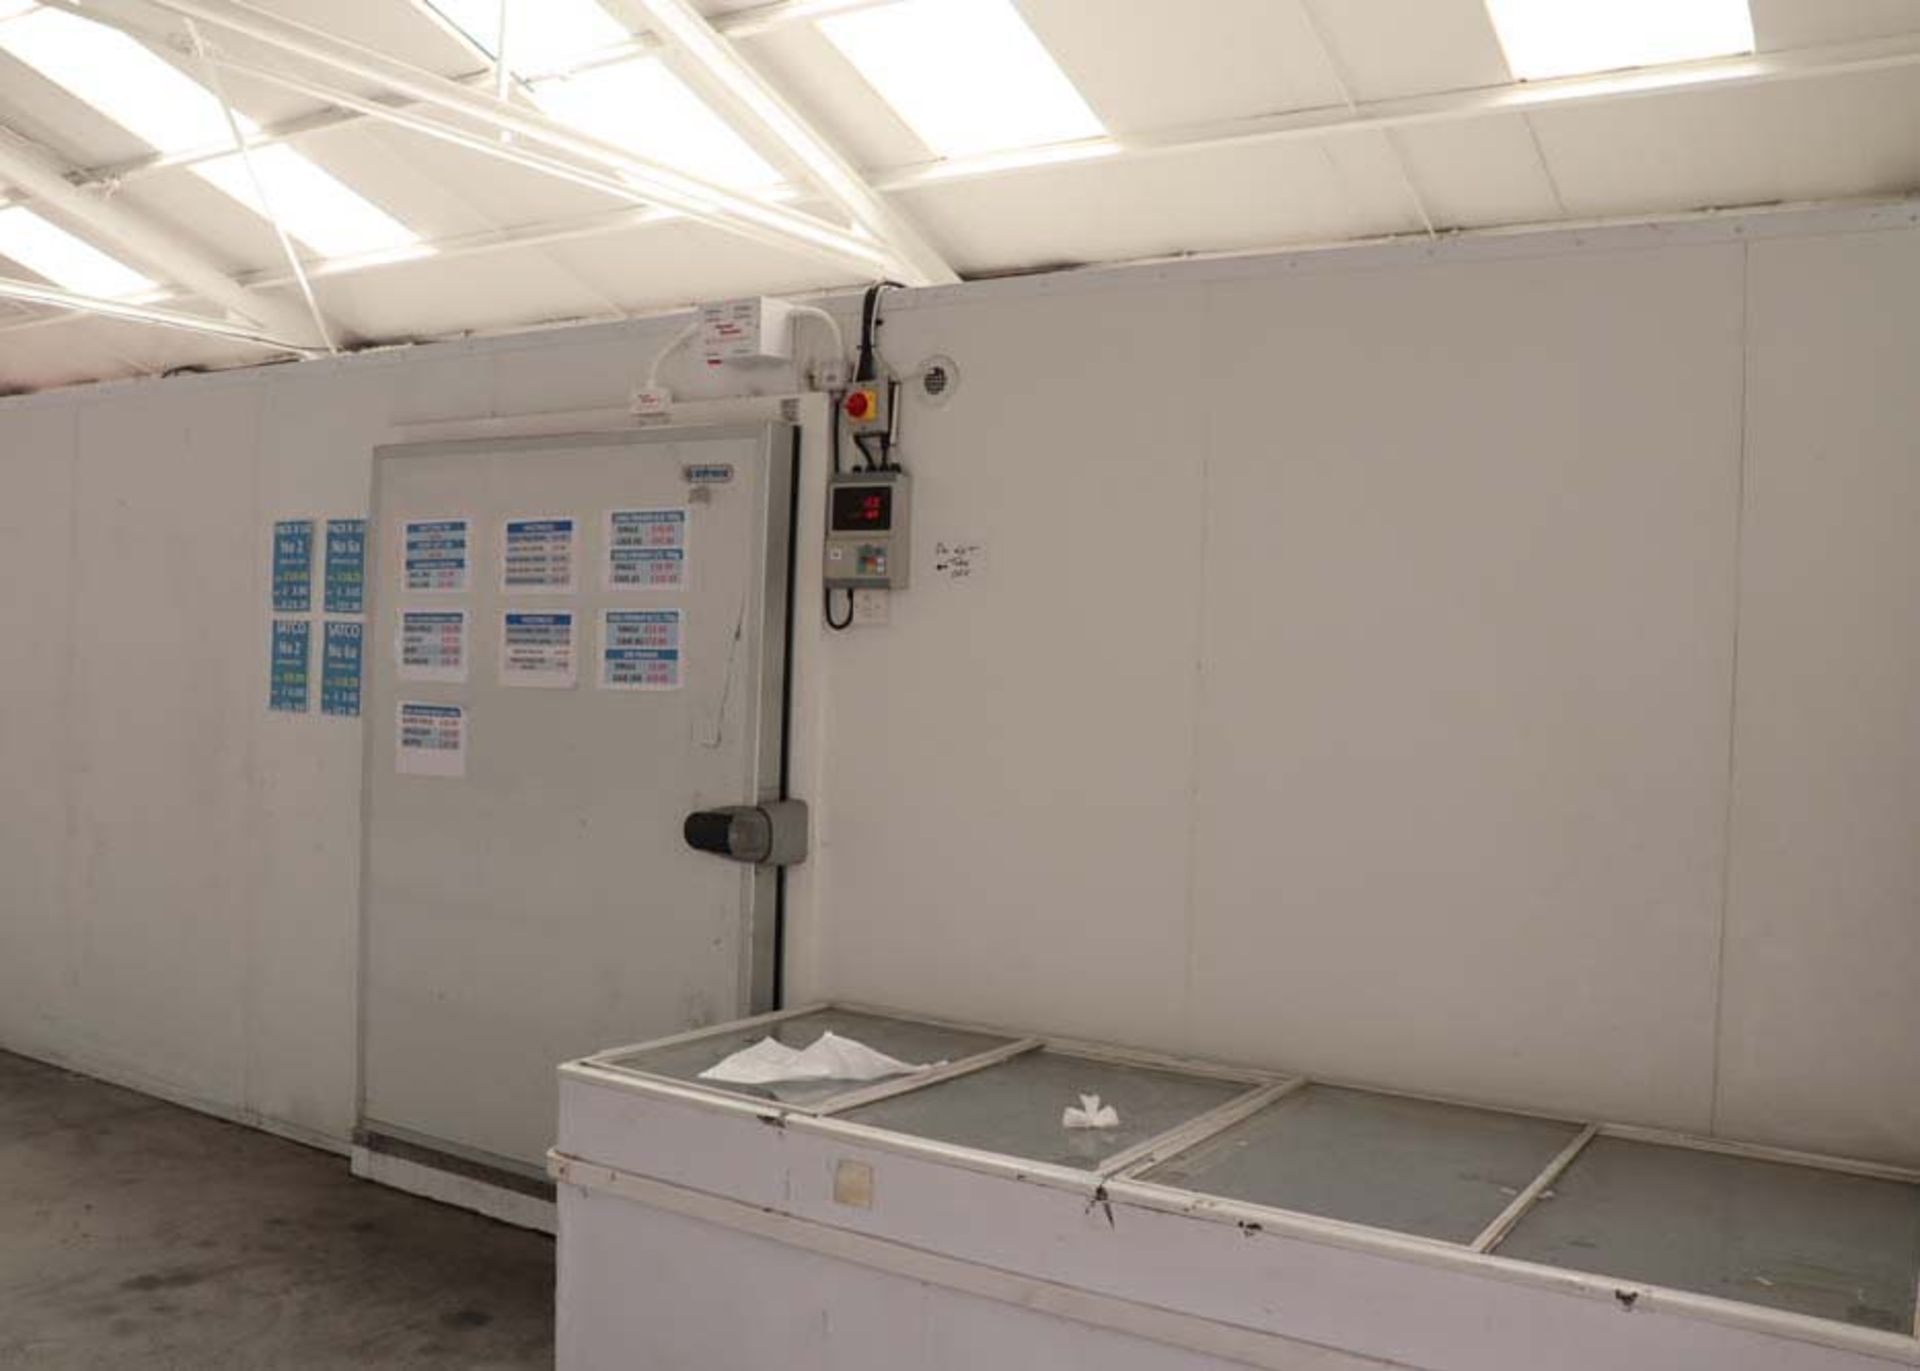 Freezer room - internal measurements approx 5 x 8.5 metres, external height 2.5m, single door,